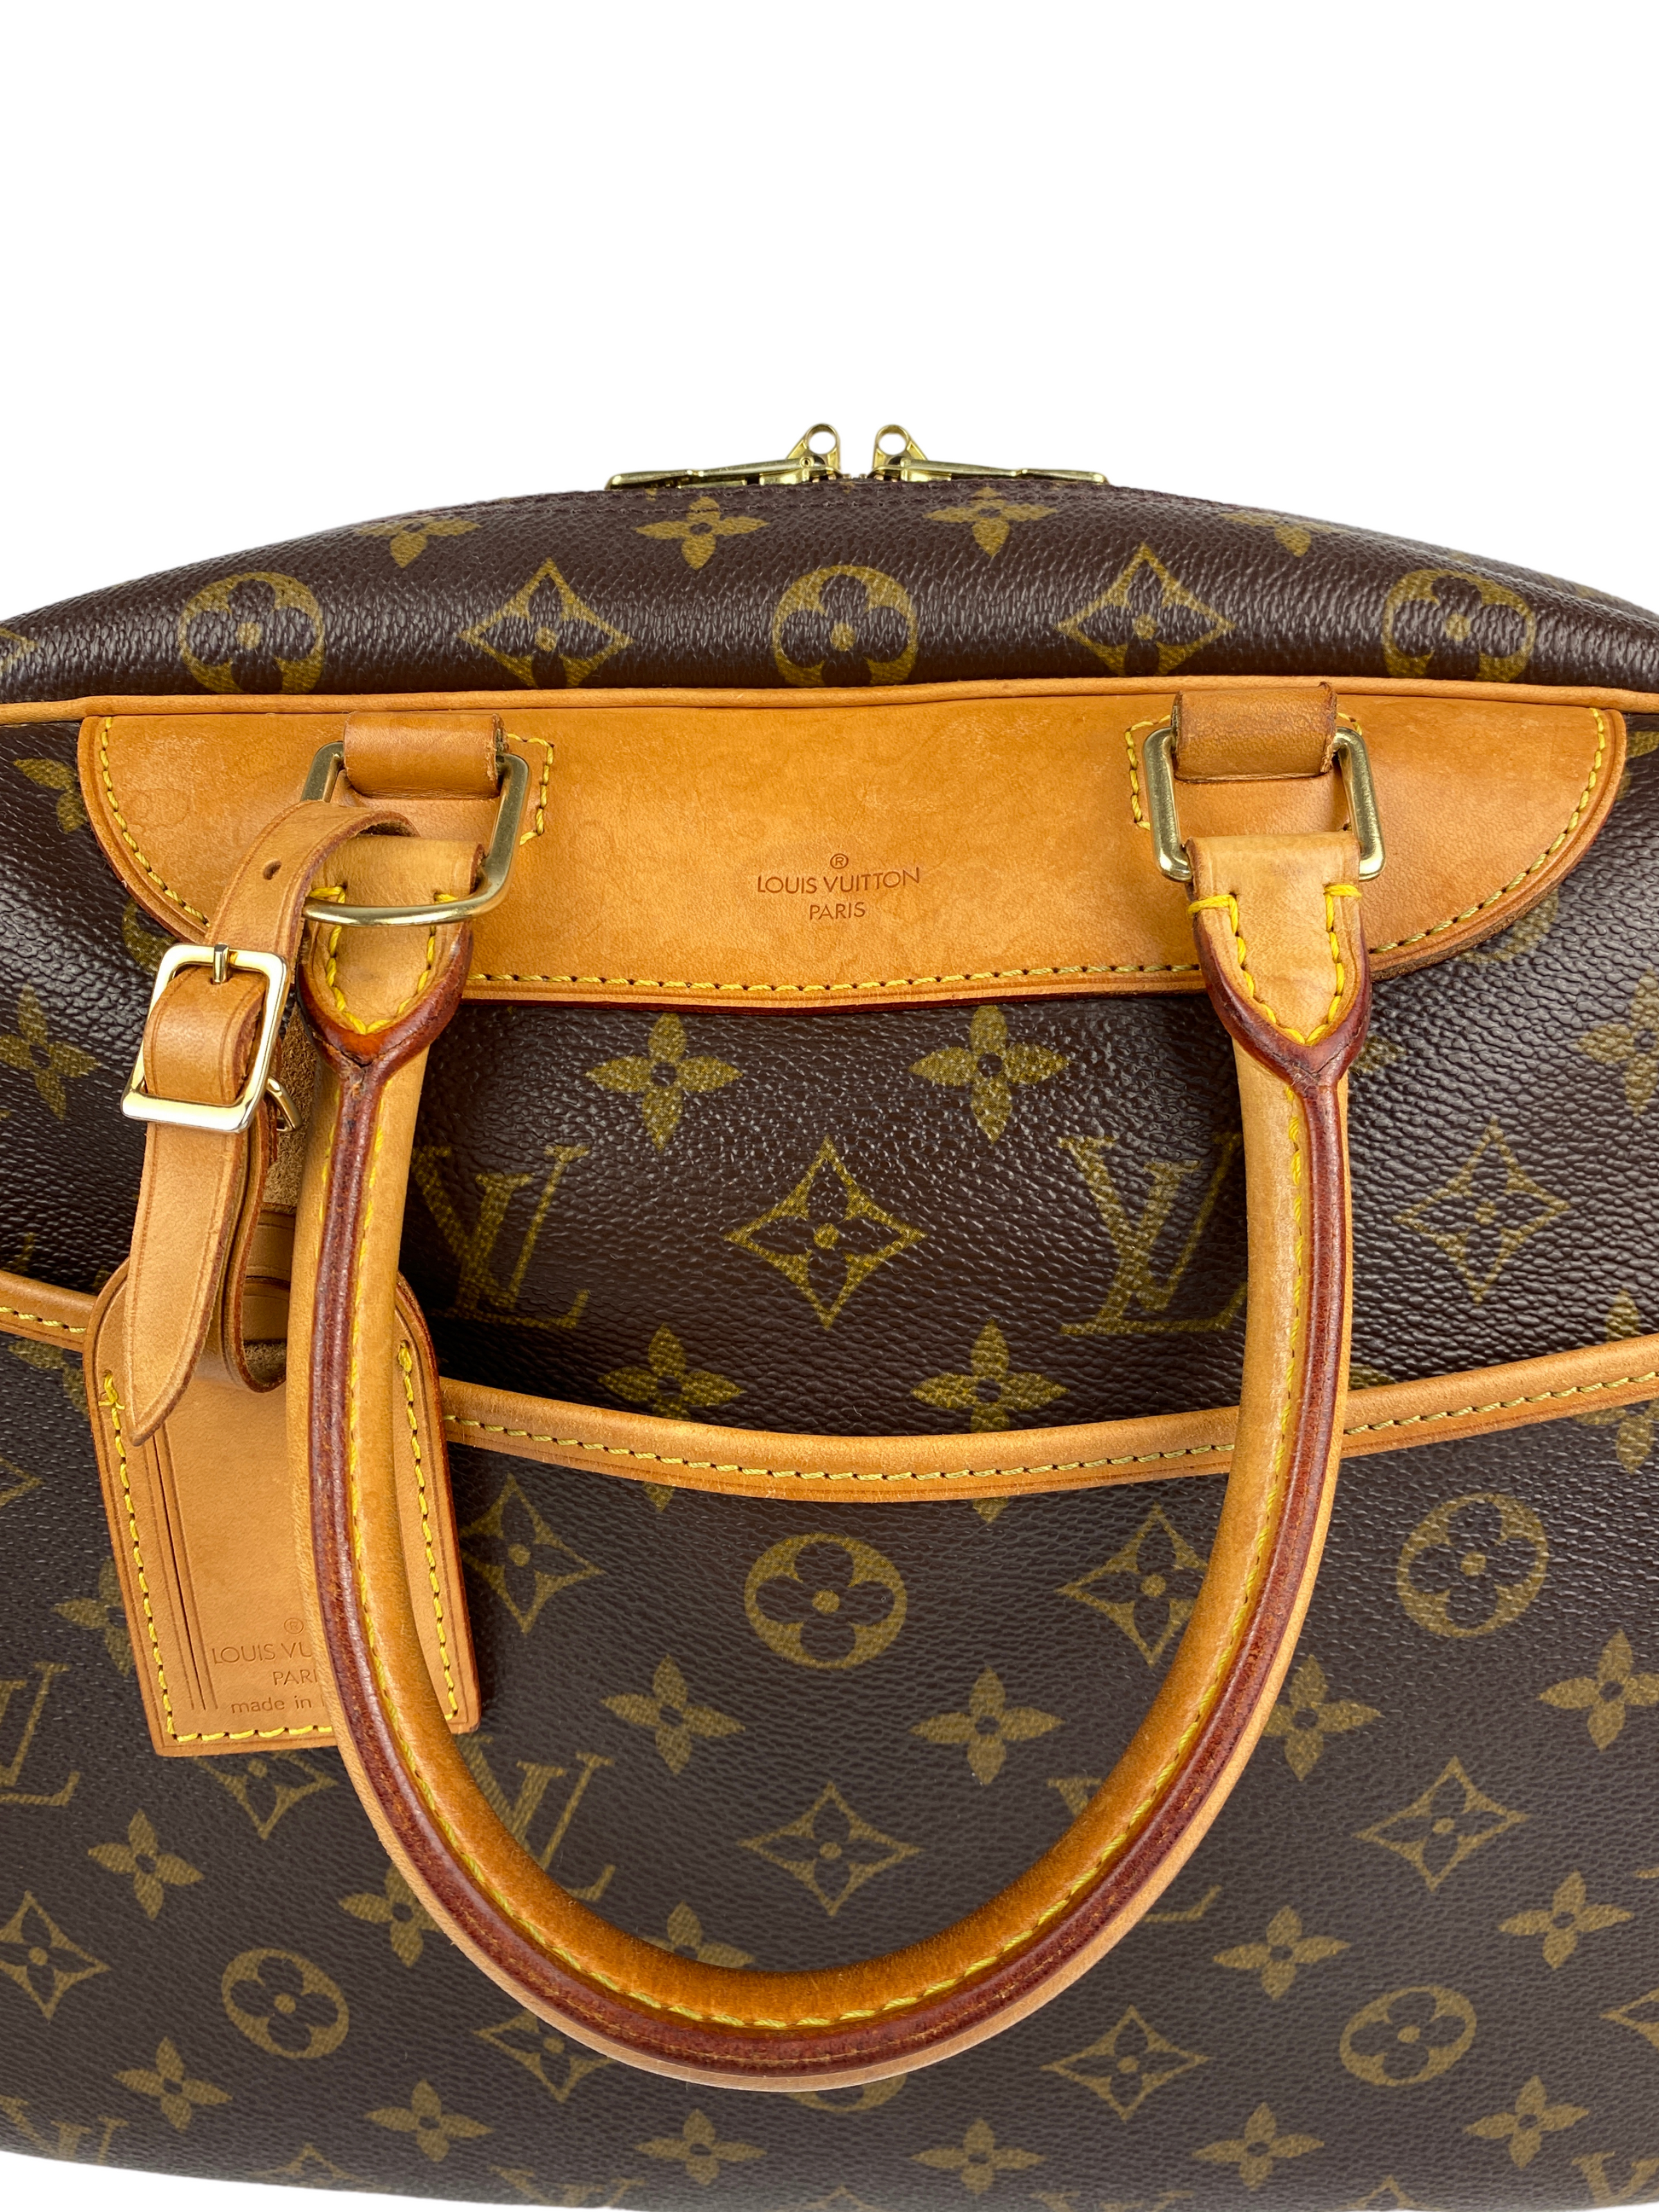 Authentic Louis Vuitton Deauville Leather Vintage Handbag 